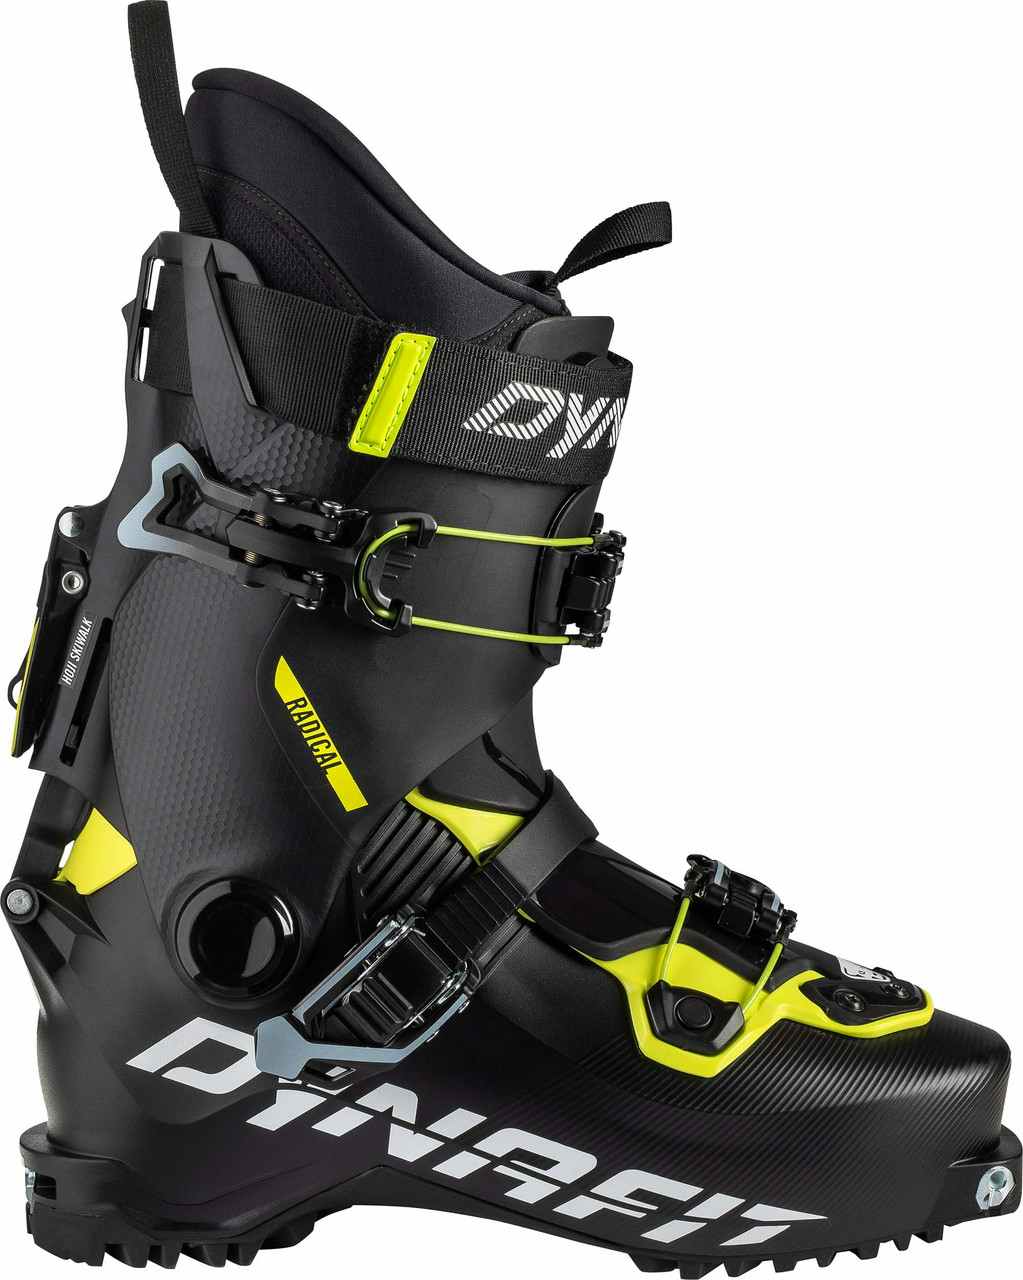 Bottes de skis Radical Noir/Jaune néon